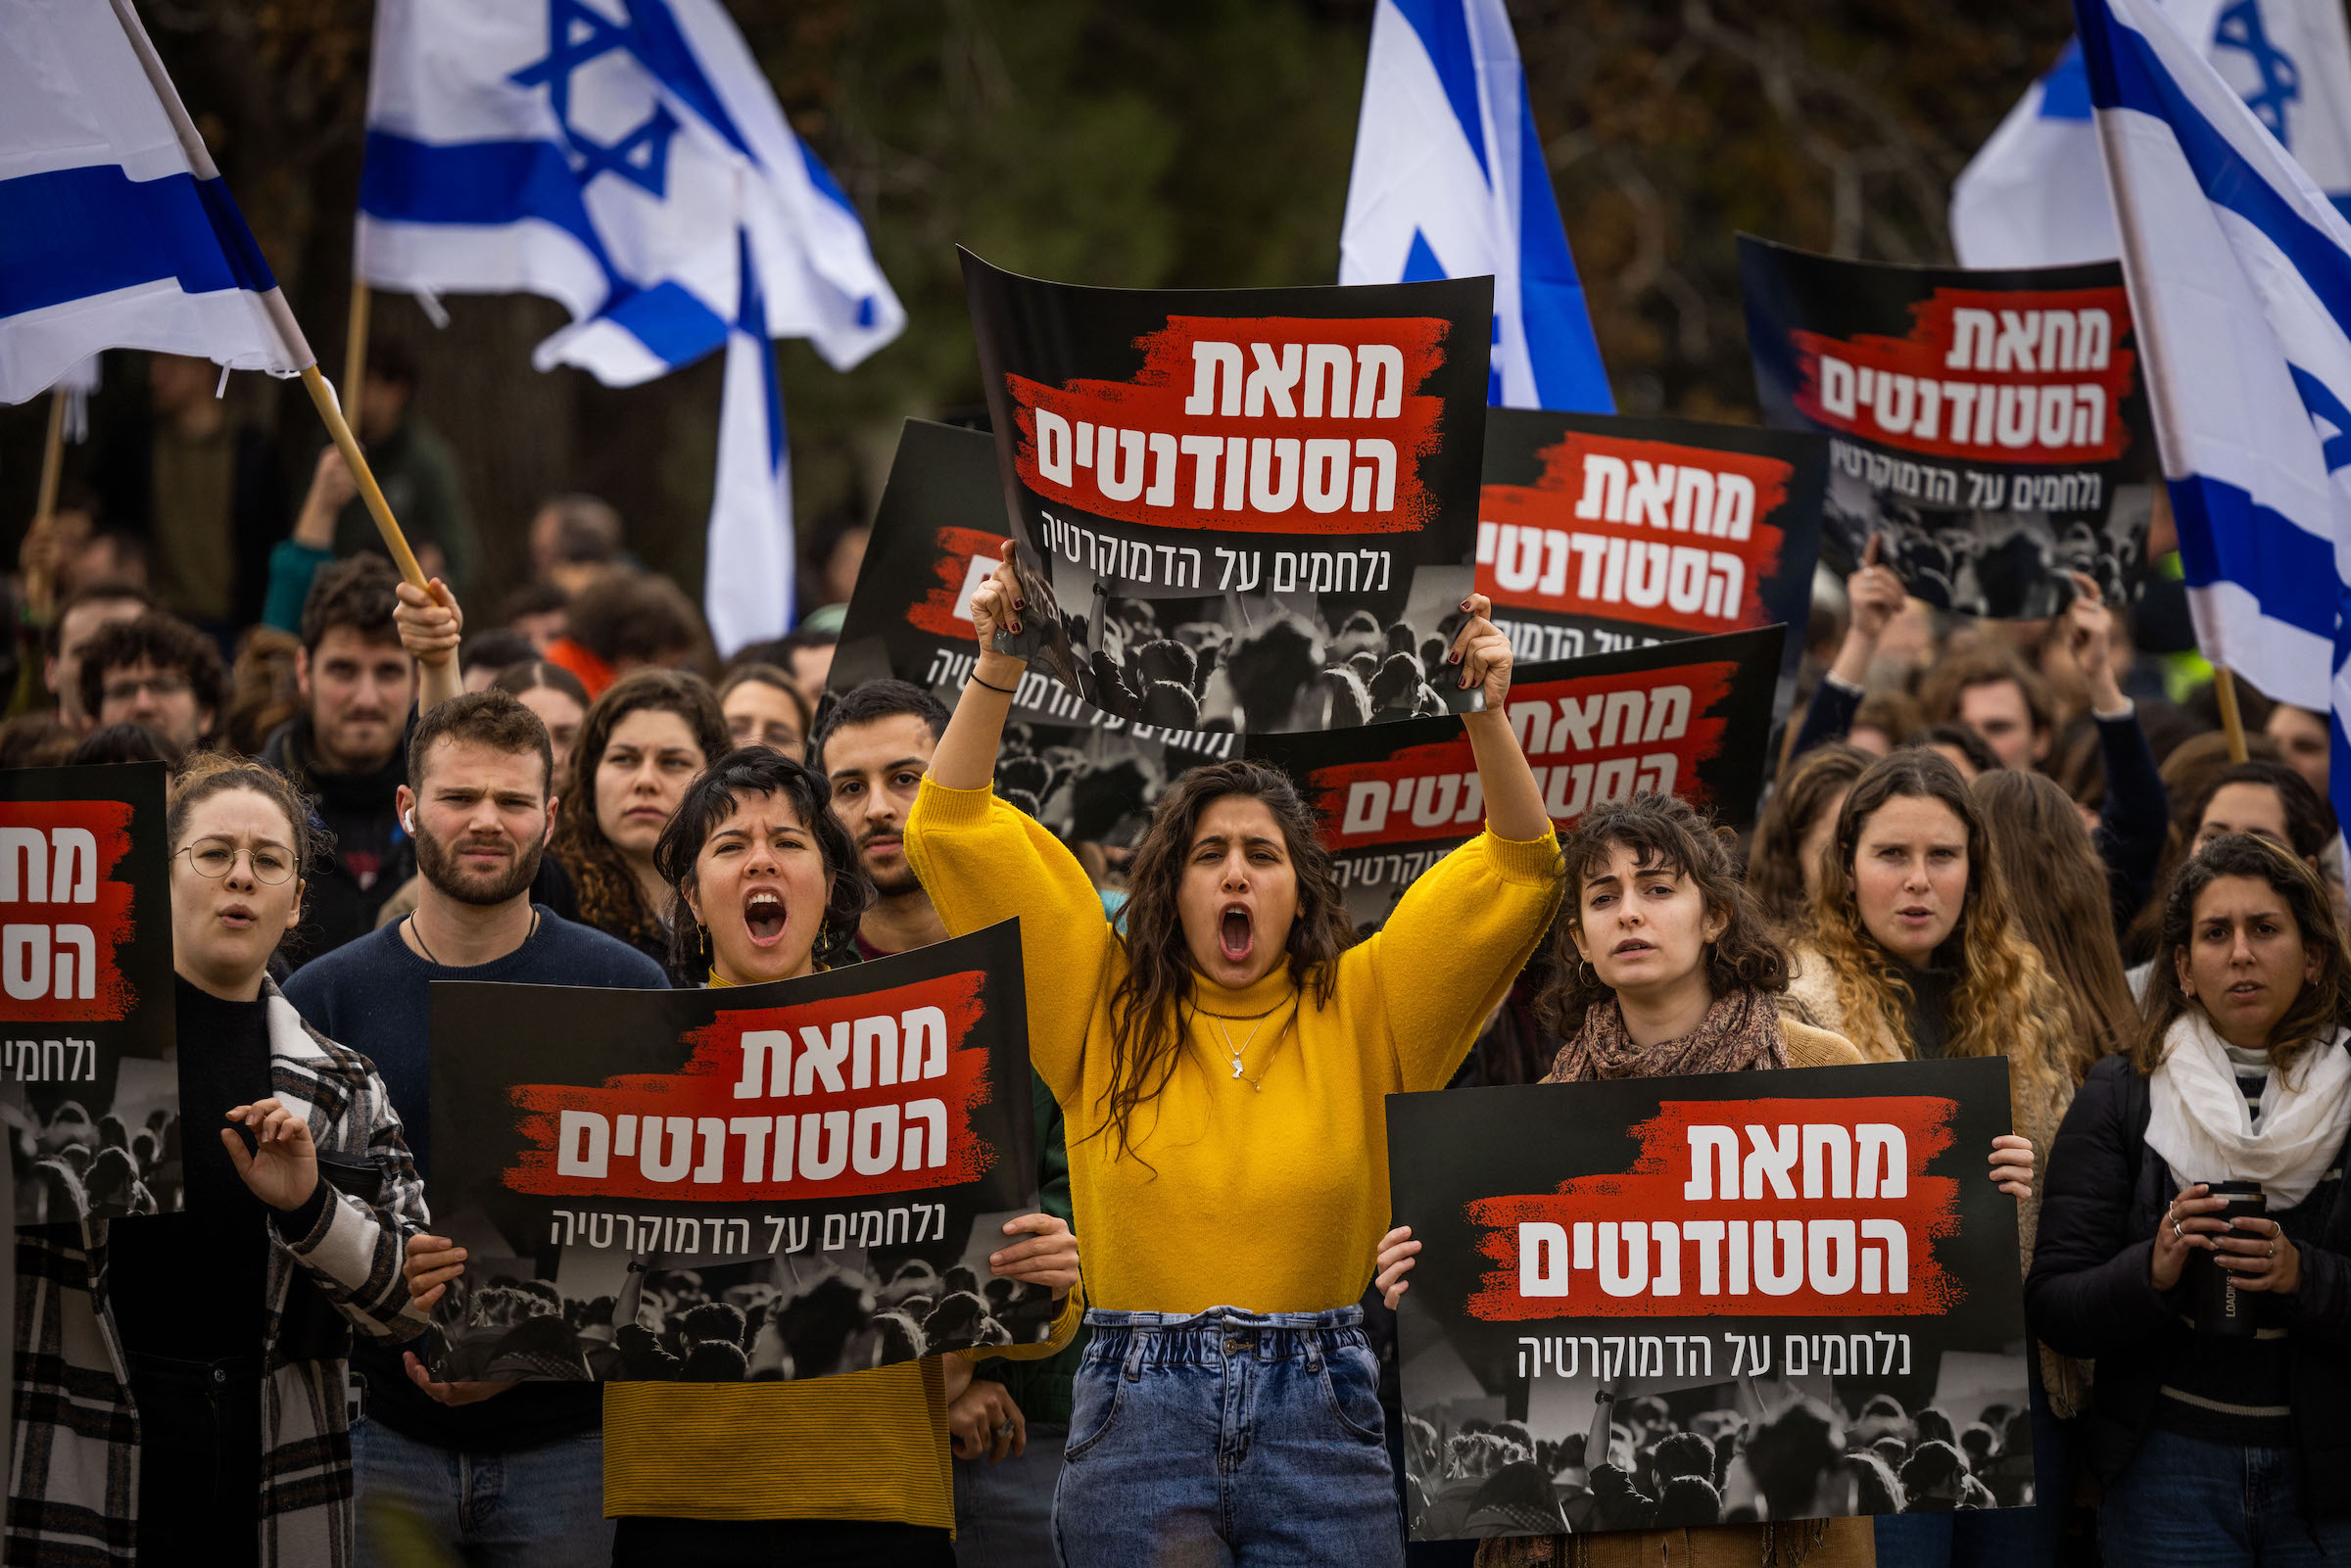 הפגנת הסטודנטים של האוניברסיטה העברית בירושלים, ביום השיבוש בשבוע שעבר | צילום: יונתן סינדל, פלאש 90